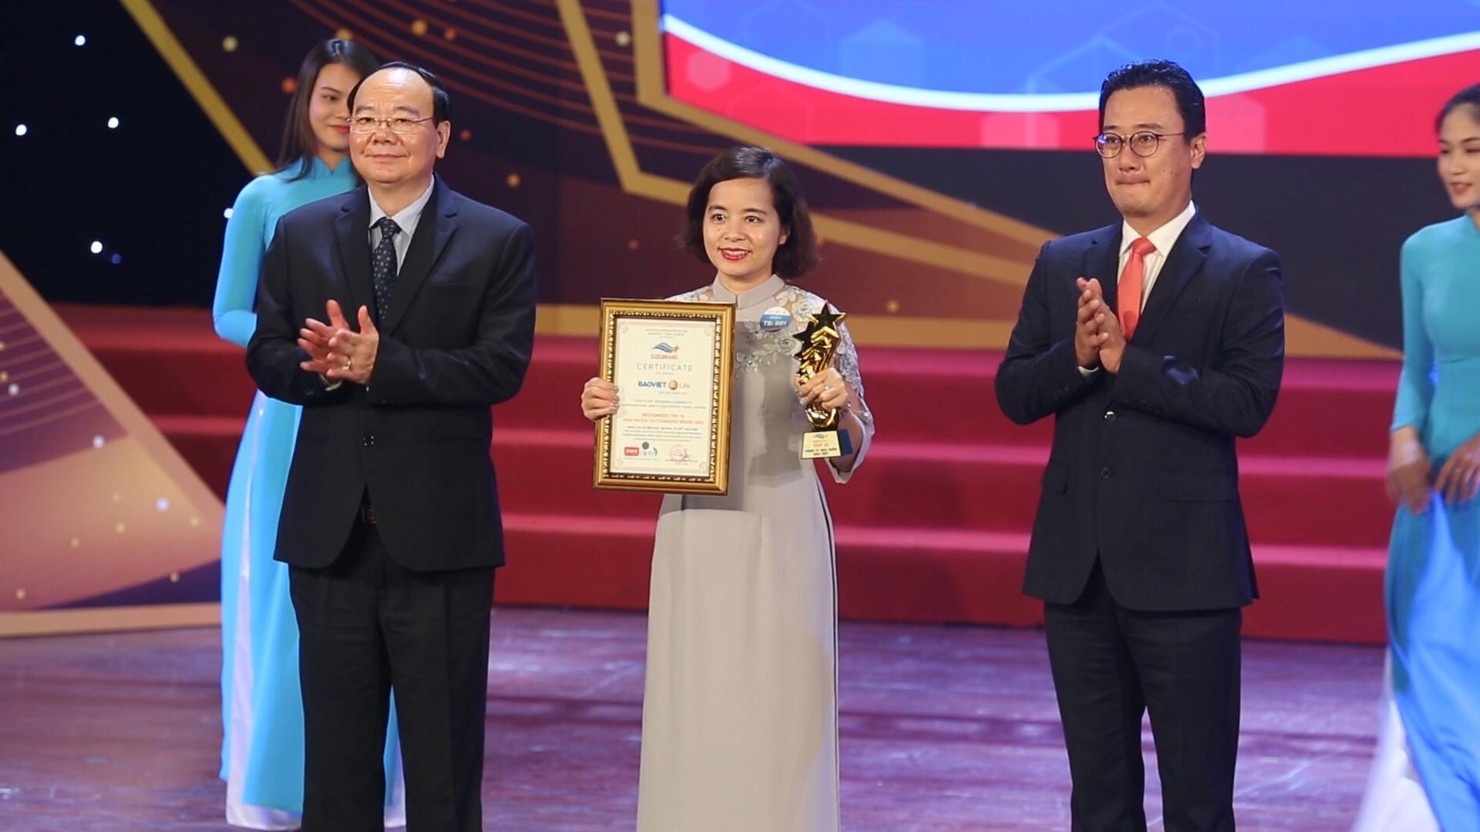  Bảo Việt Nhân thọ xuất sắc nằm trong Top 10 “Thương hiệu Tiêu biểu Châu Á Thái Bình Dương 2020”.